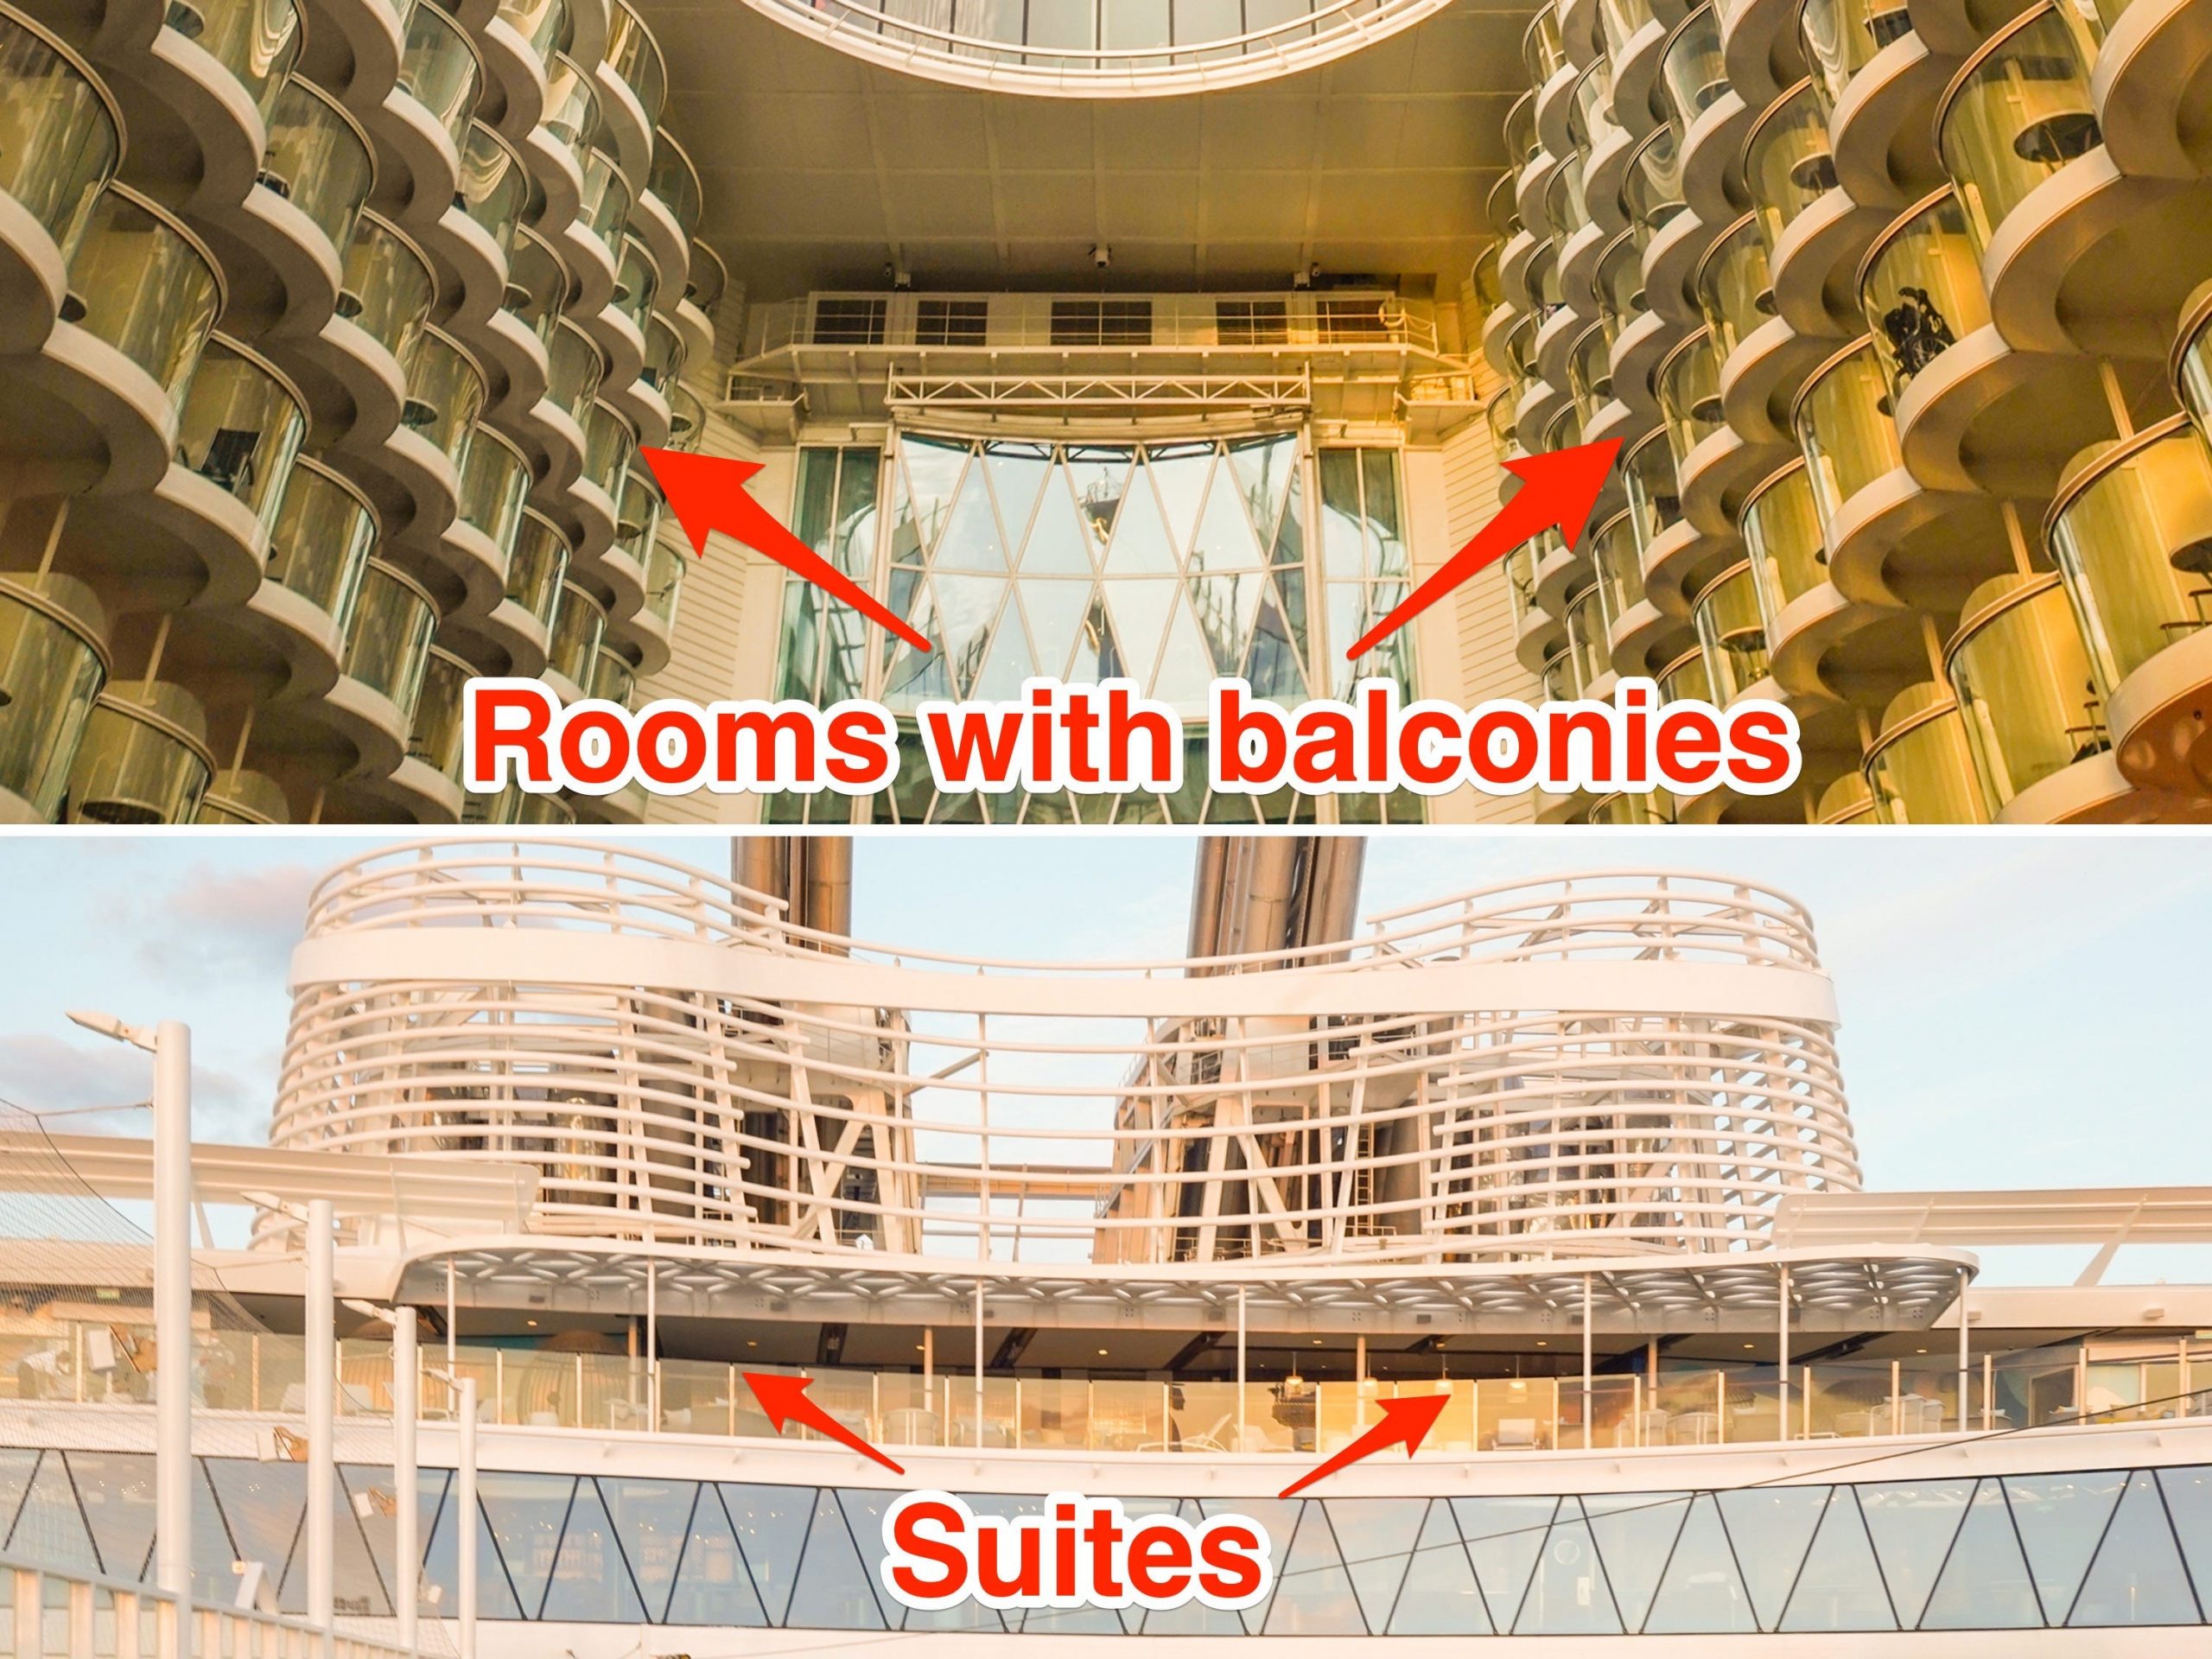 Pijlen wijzen naar kamers met balkon (boven) en kamers met suites (onder) op 's werelds grootste cruiseschip